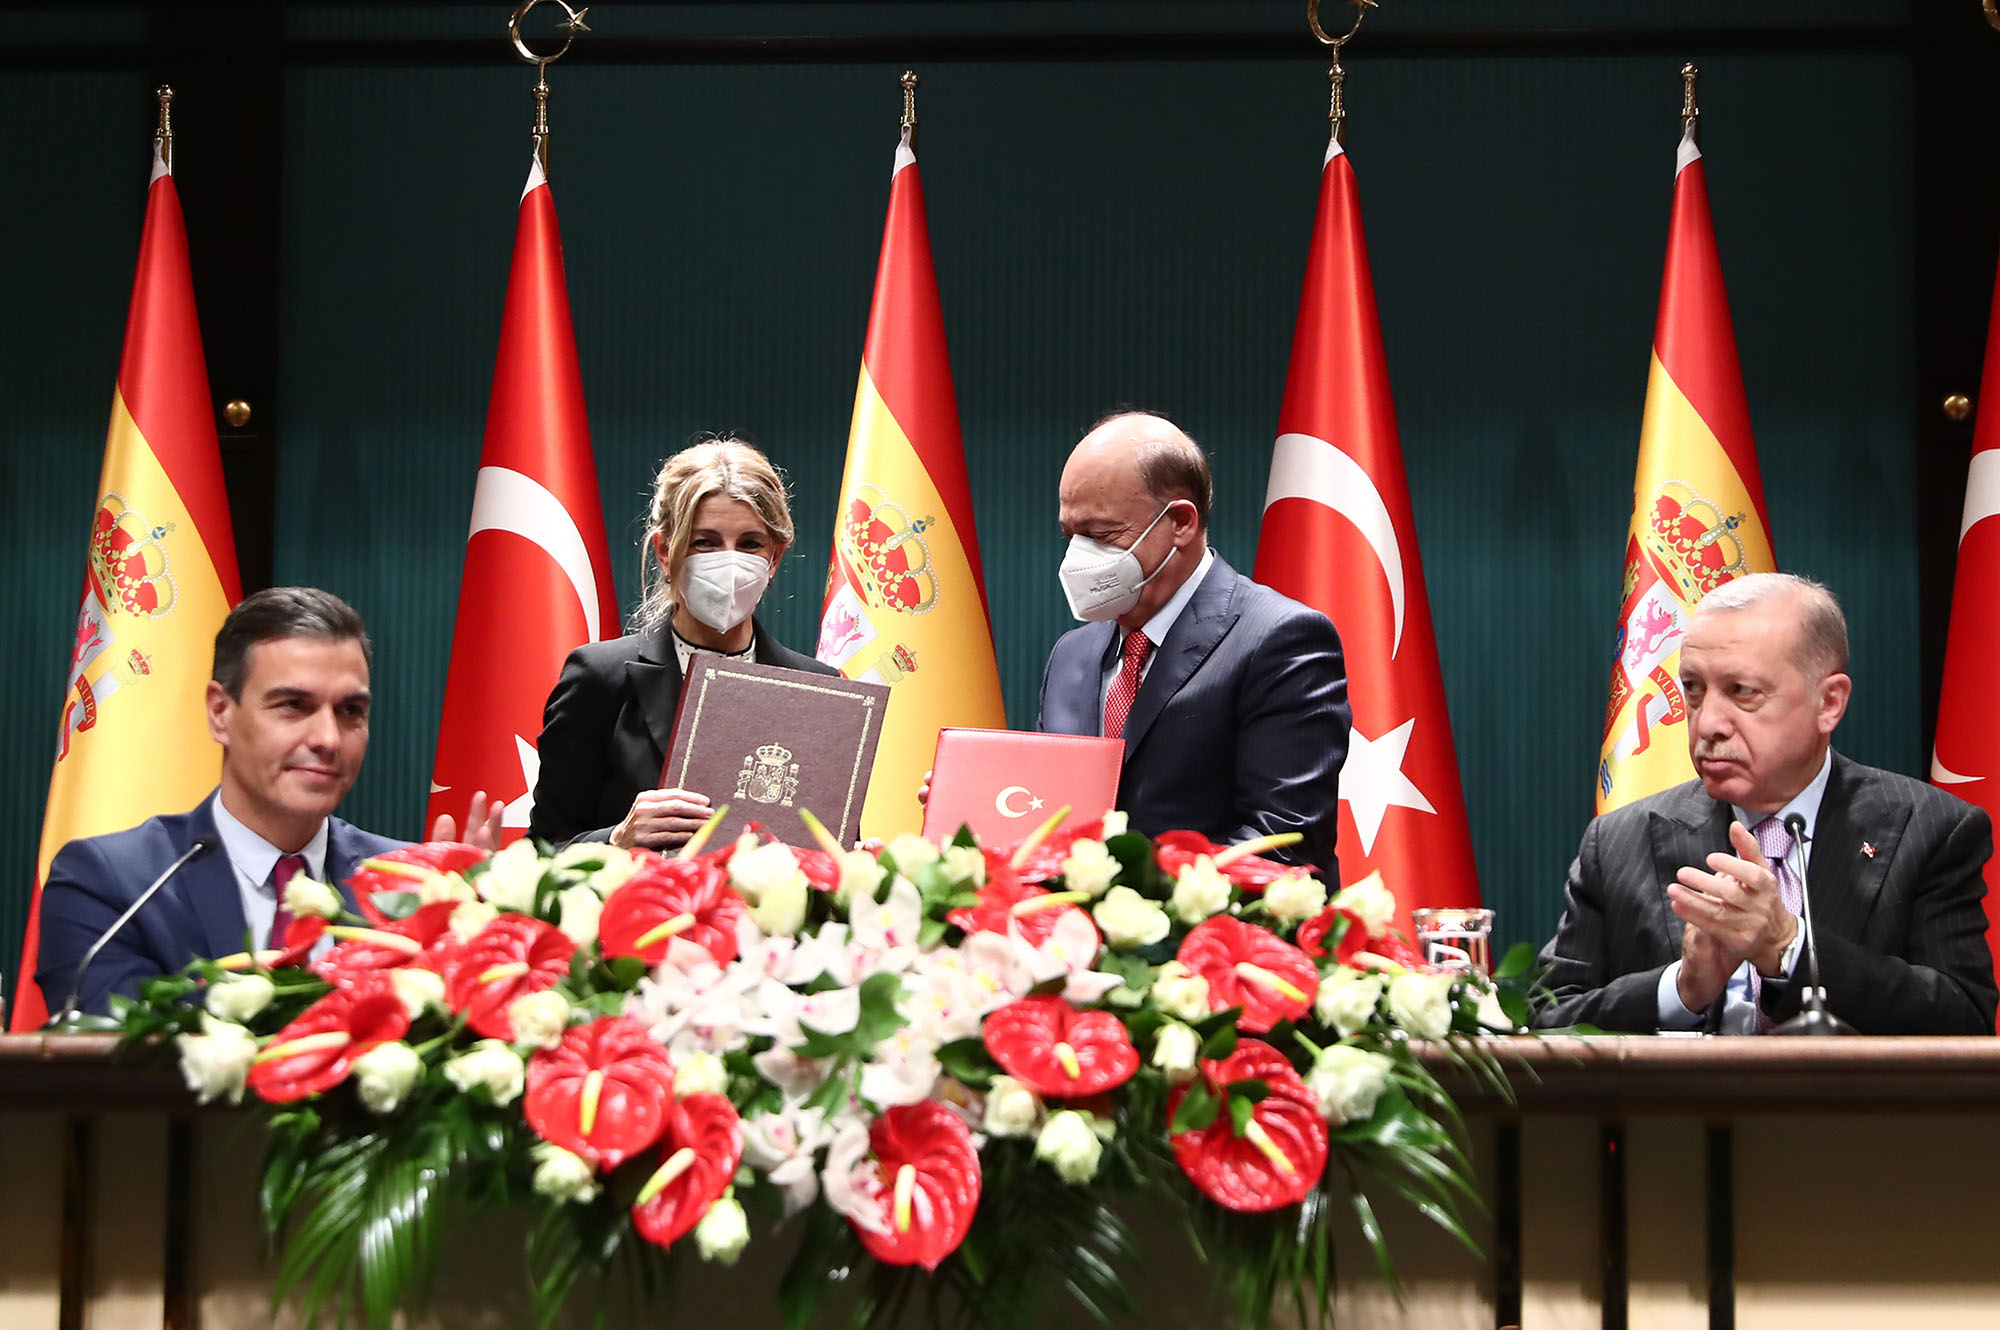 Pedro Sánchez, Yolanda Díaz, su homólogo turco, y Erdogan